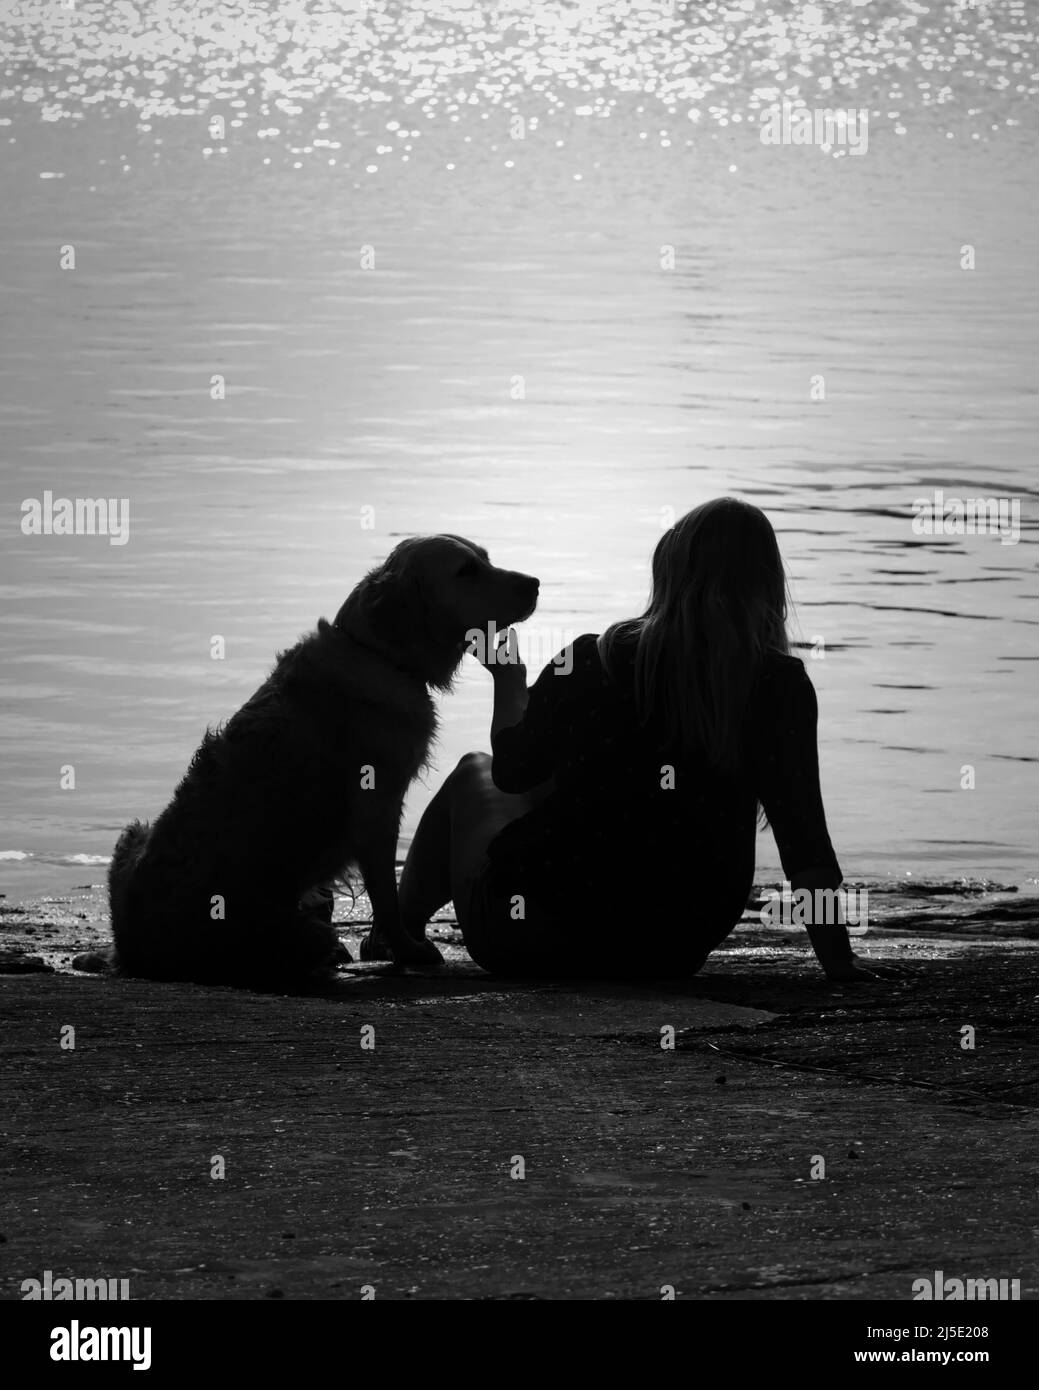 Hintergrundbeleuchtete Silhouette Eines Mädchens streichelt ihren goldenen Retreiver Hund unter dem Kinn bei Sonnenuntergang am Wasser. Zeigt Zuneigung, Liebe, Anbetung. Monchrom, Bla Stockfoto